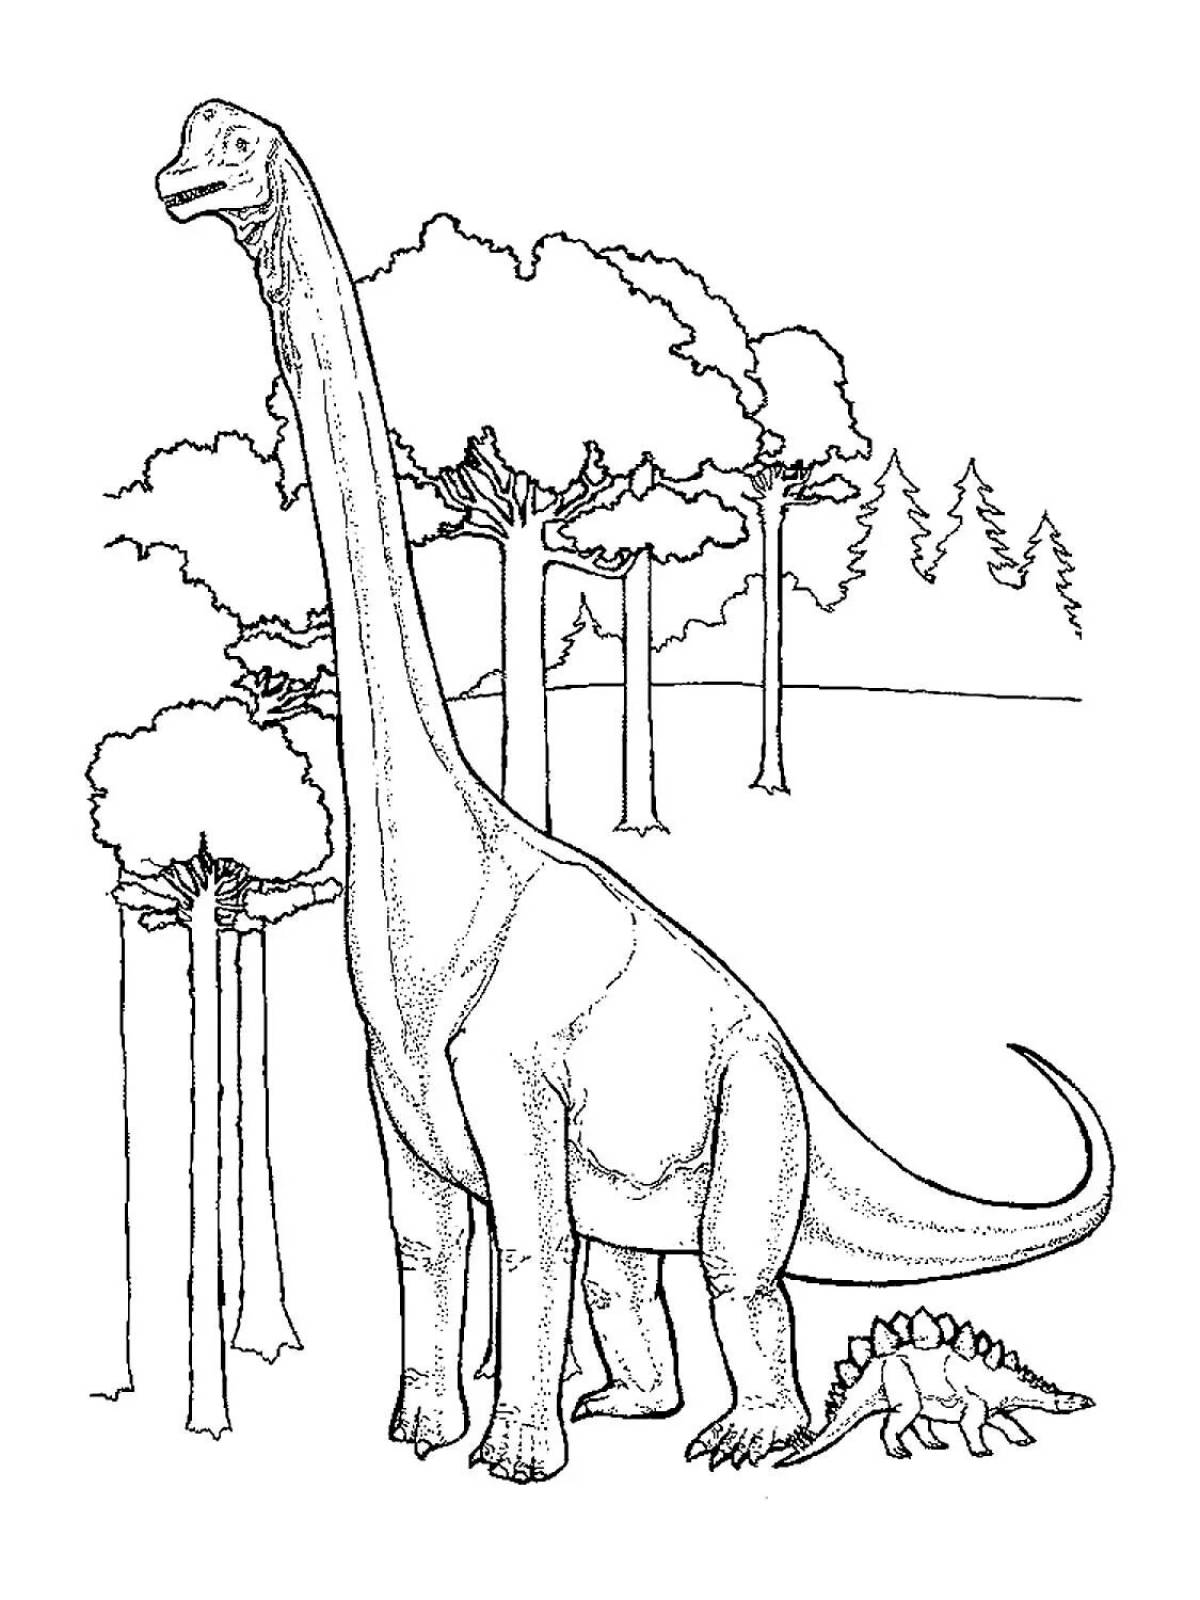 Herbivore dinosaur #1